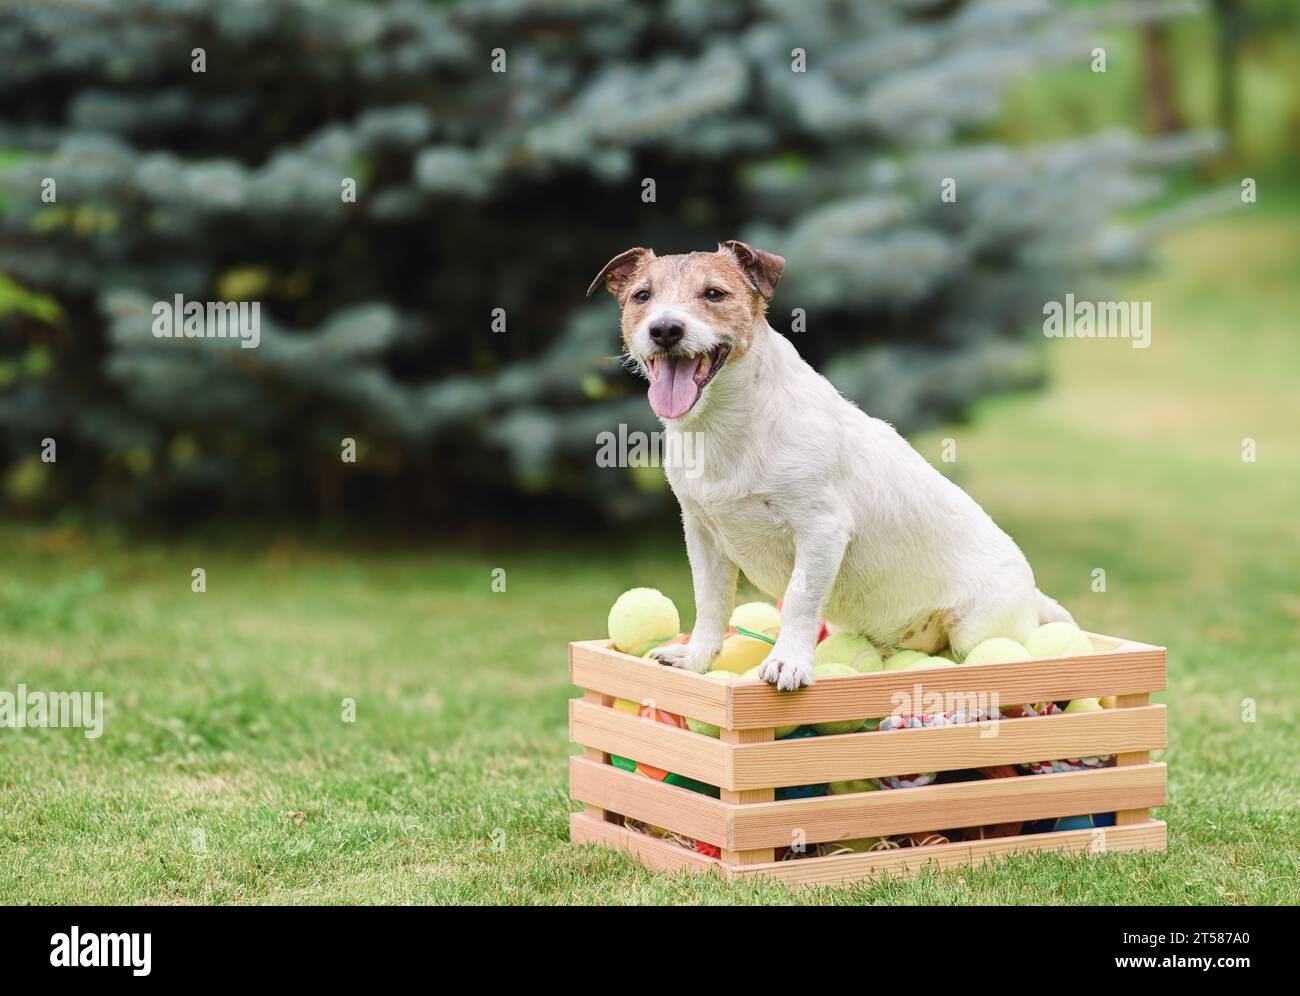 Come fermare le risorse a guardia del comportamento dei cani. Foto Stock